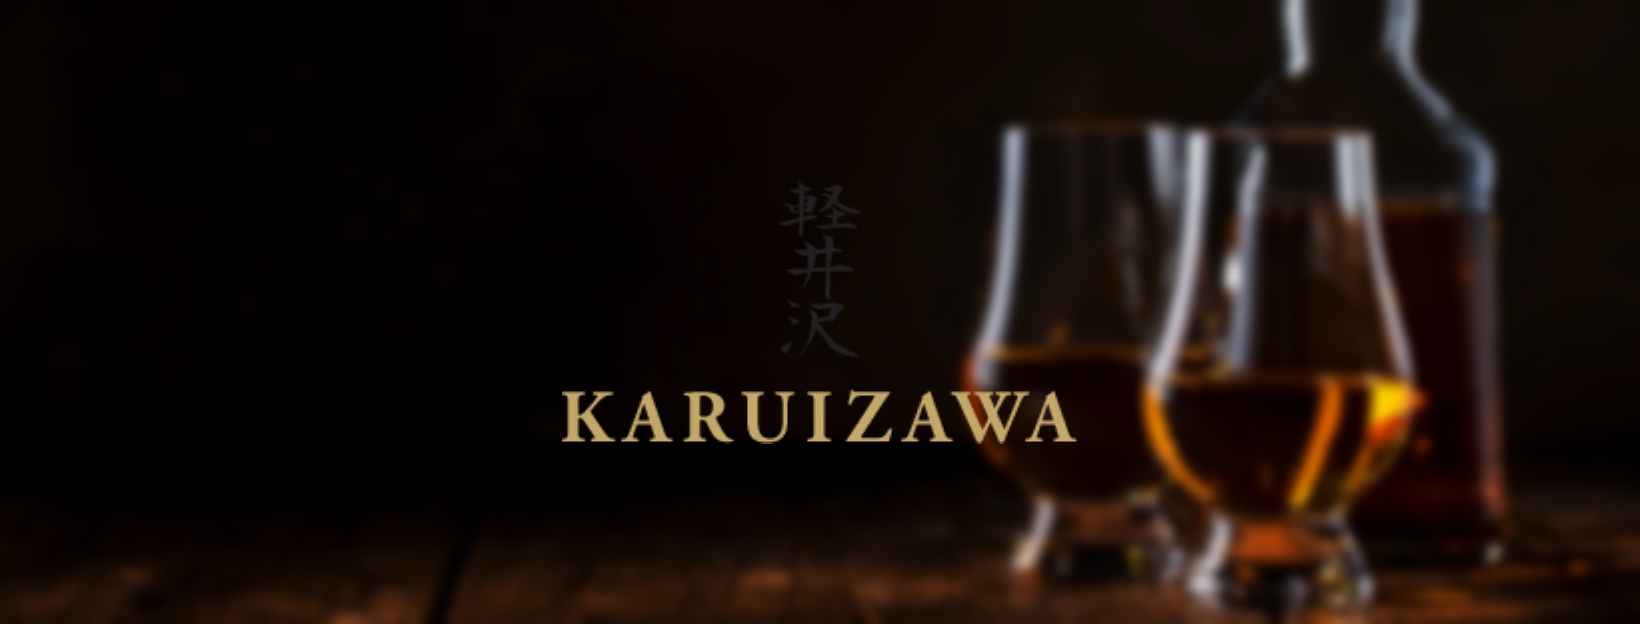 Karuizawa nft